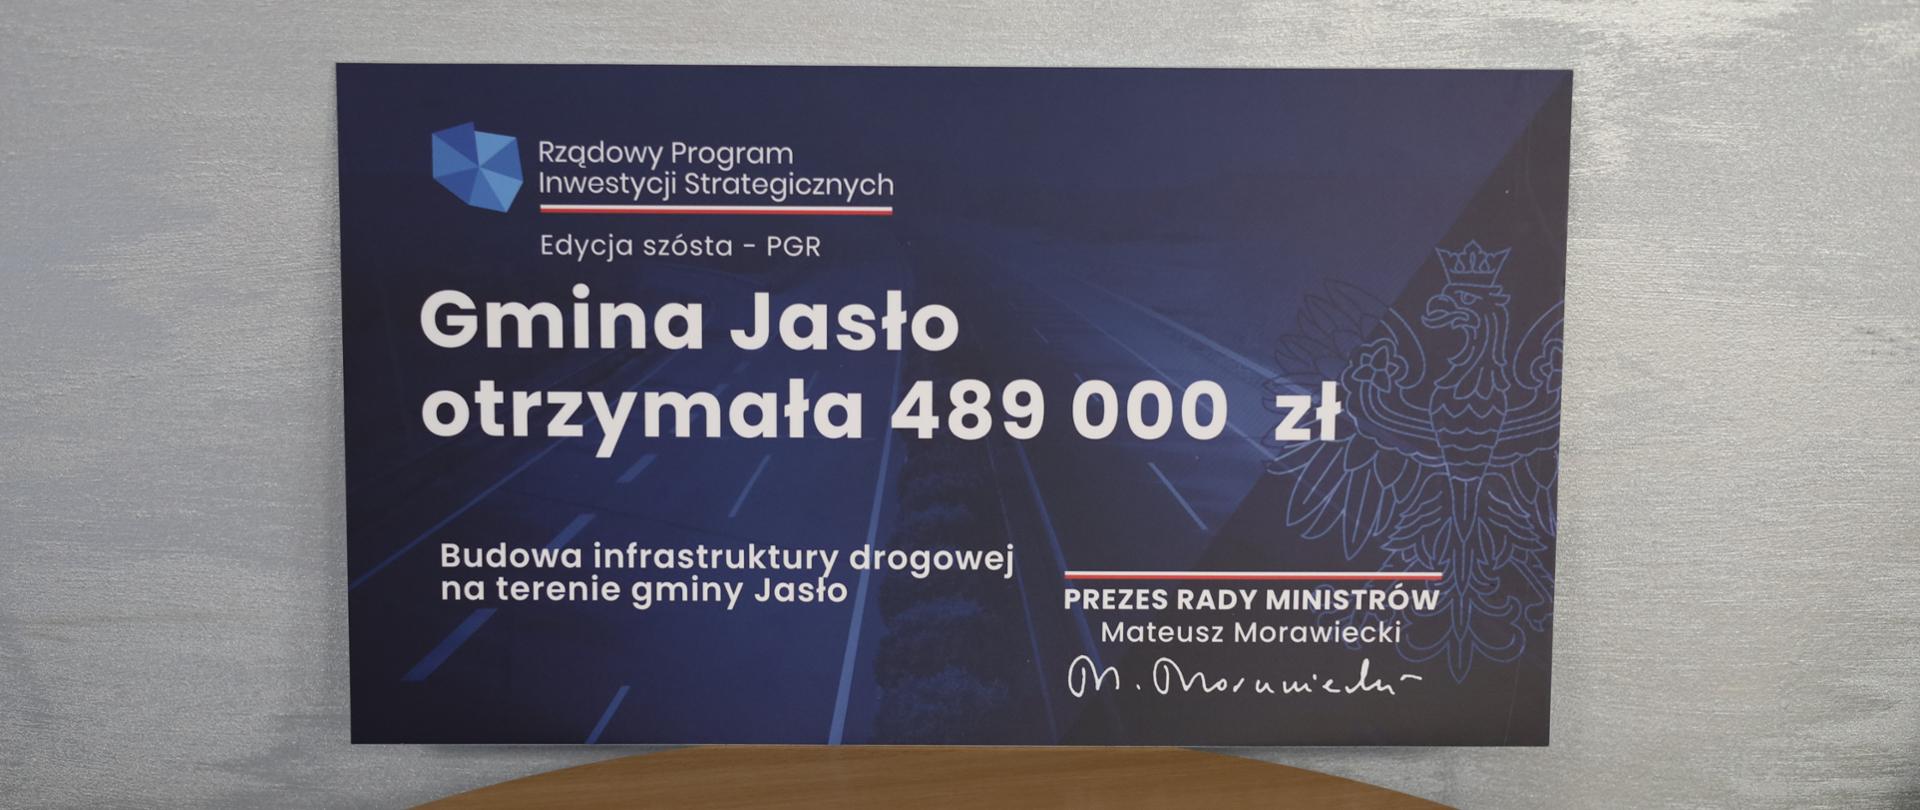 Budowa infrastruktury drogowej na terenie gminy Jasło